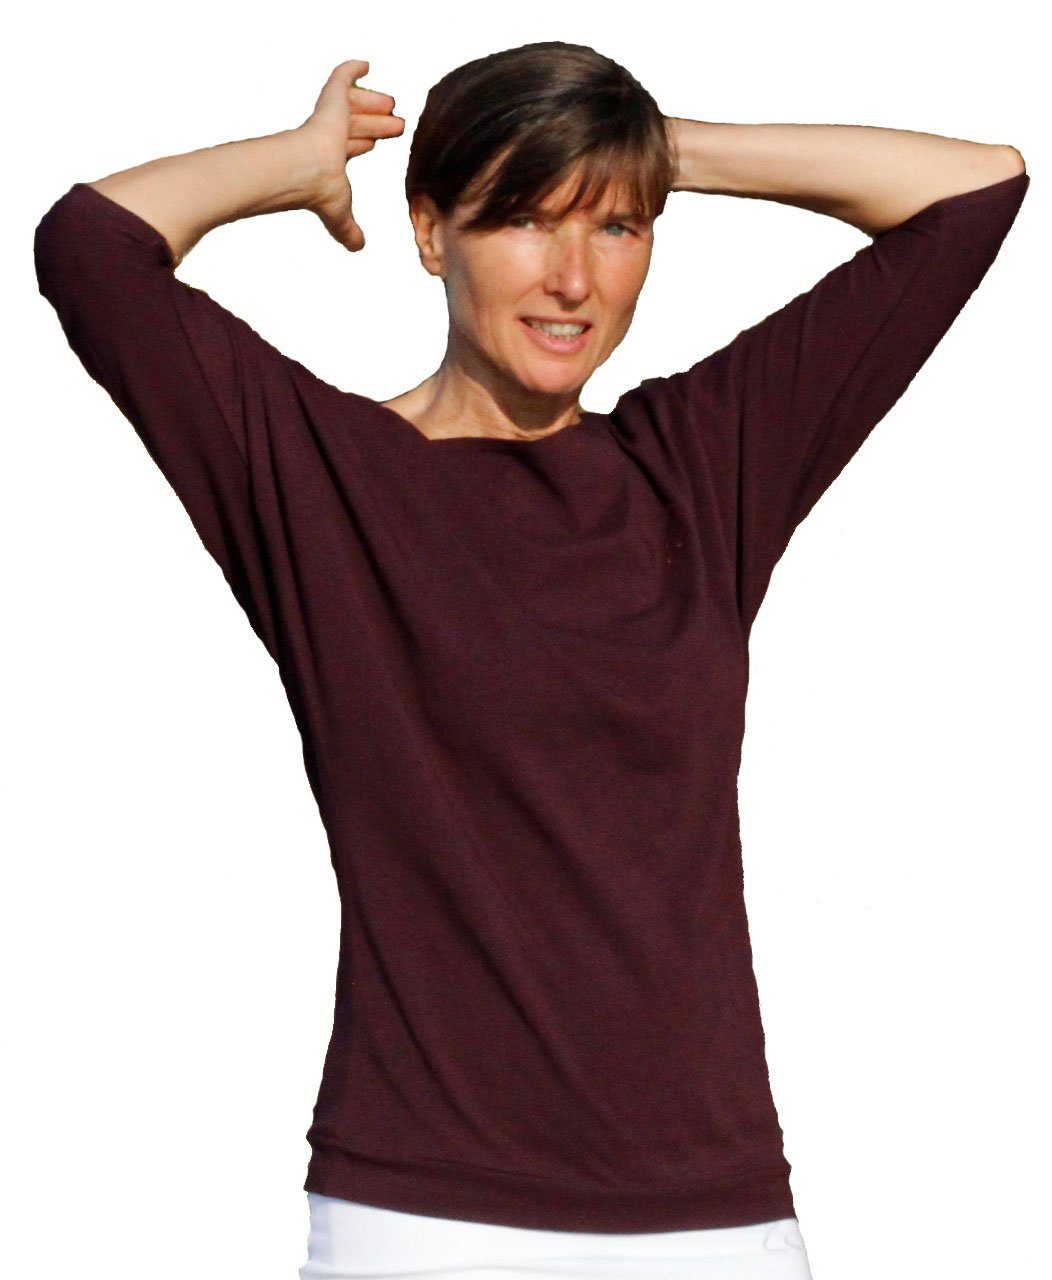 ESPARTO Yogashirt mit Aubergine (U-Boot-Ausschnitt) Bio-Baumwolle Schulterausschnitt breitem Halbarmshirt Sadaa in Wohlfühlshirt